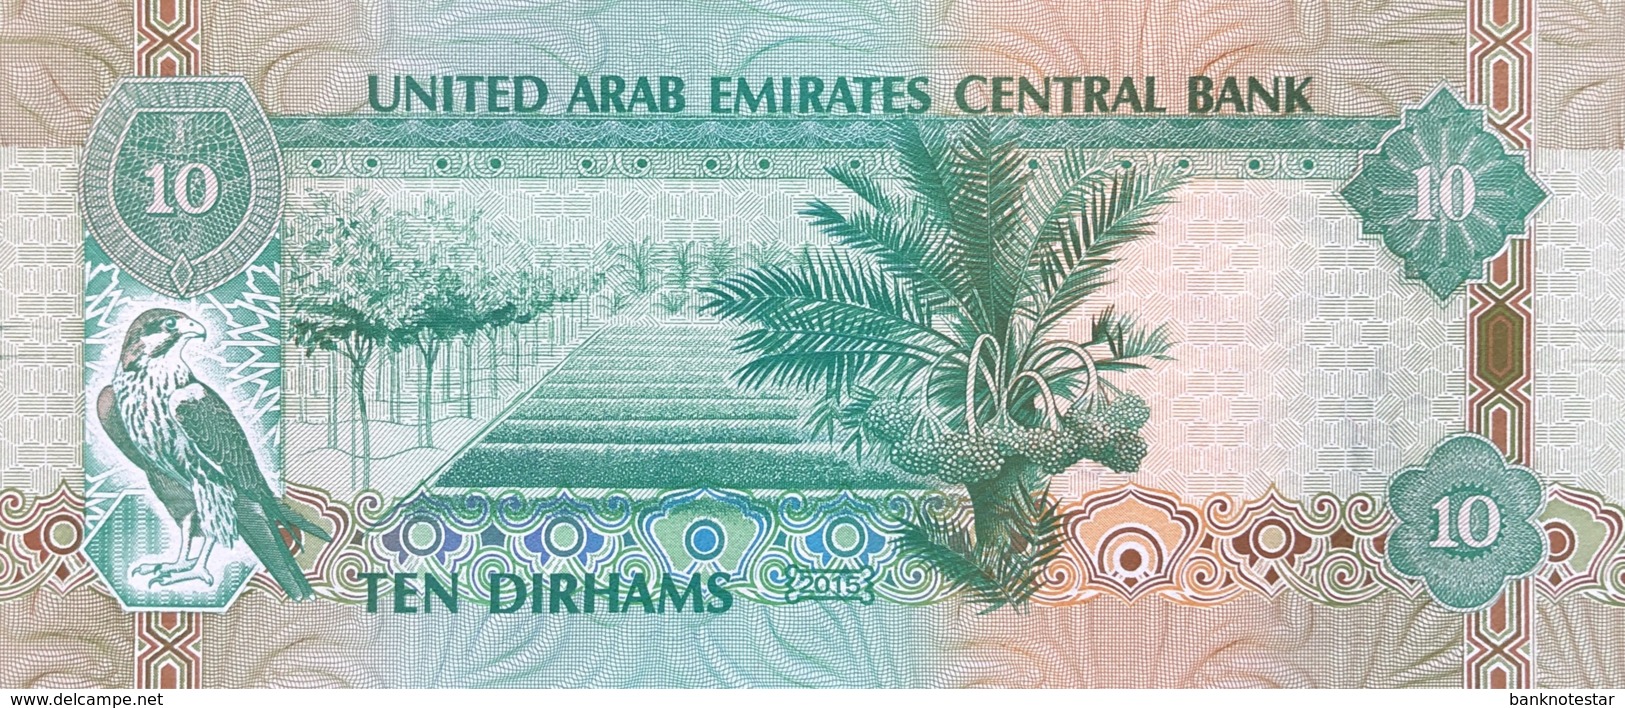 United Arab Emirates 10 Dirham, P-27 (2015) - UNC - Ver. Arab. Emirate